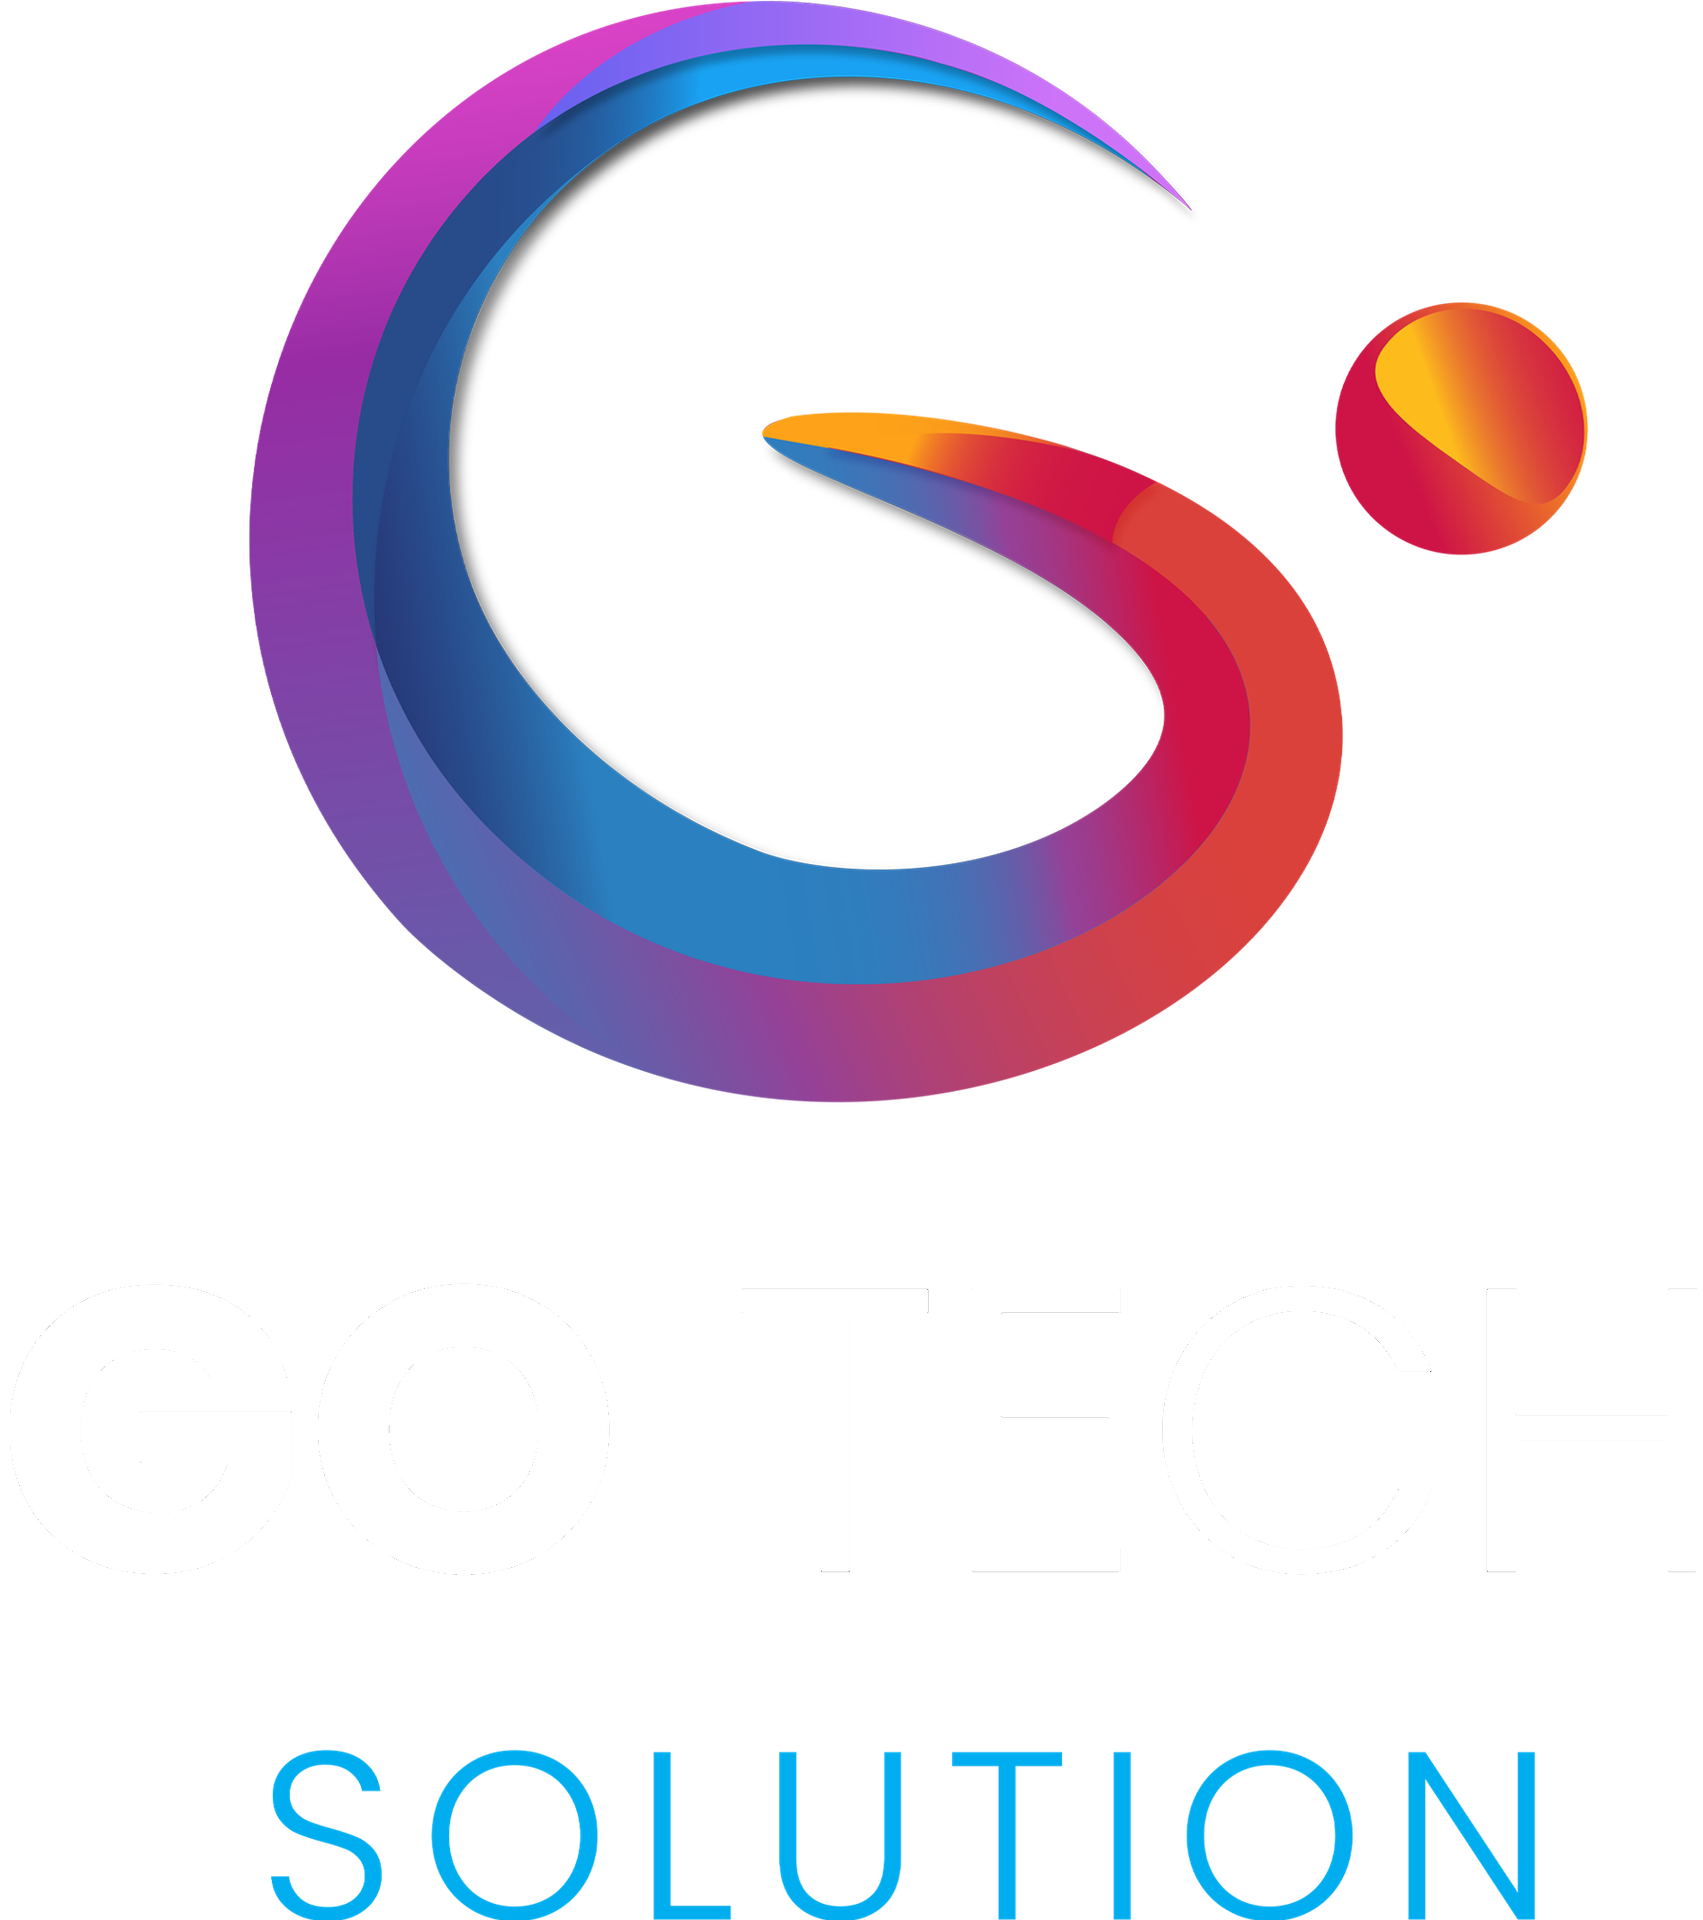 Gotech Logo